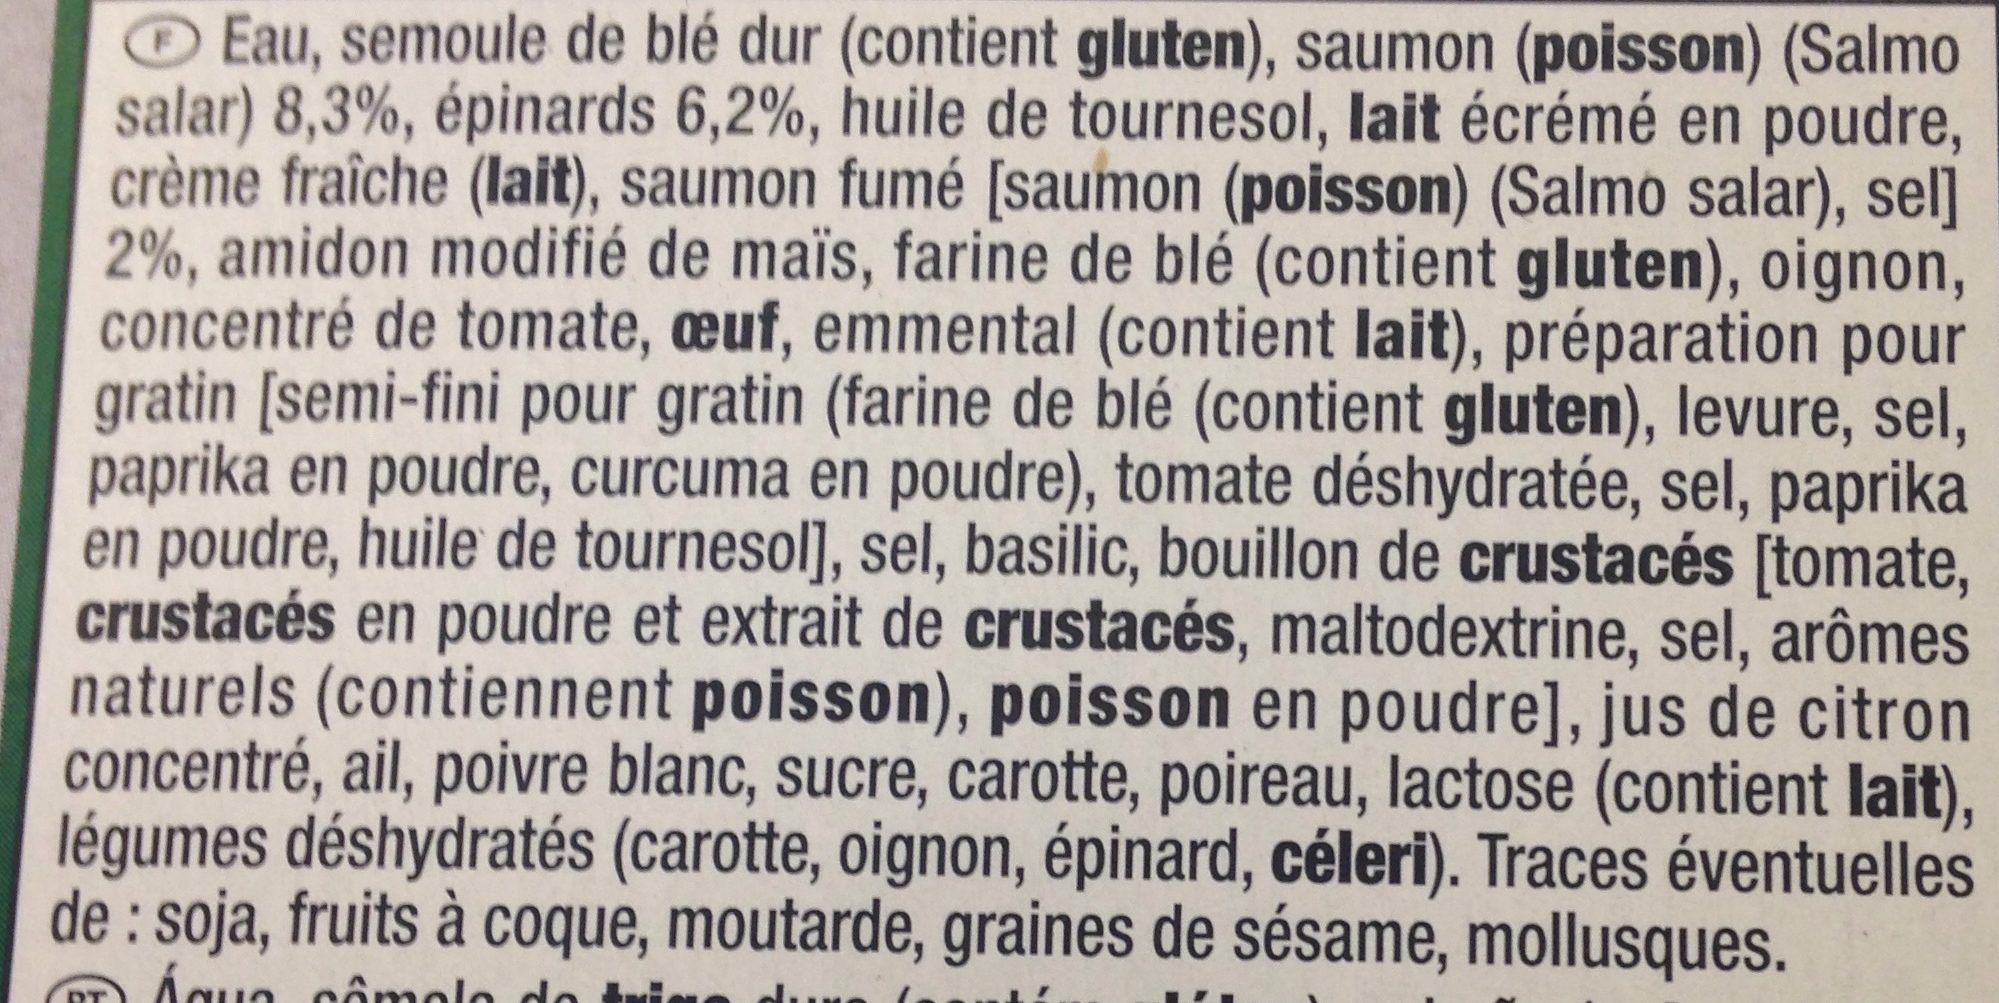 Lasagnes saumon epinards - Ingrédients